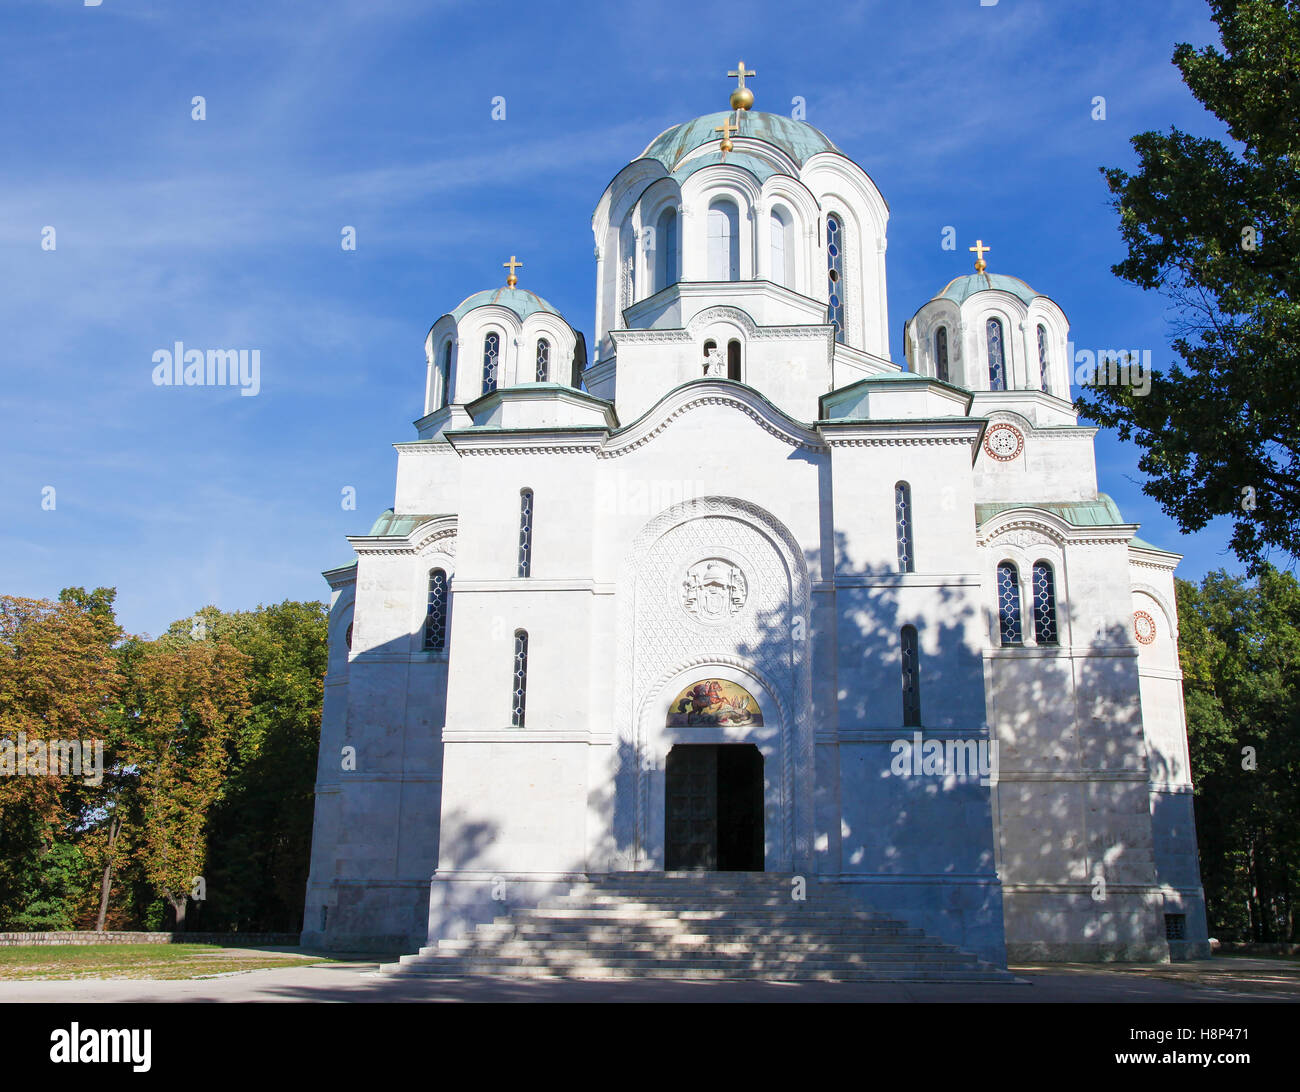 La Iglesia de San Sava es una iglesia ortodoxa serbia situada en la meseta Vracar en Belgrado. Es uno de los mayores Orthod Foto de stock